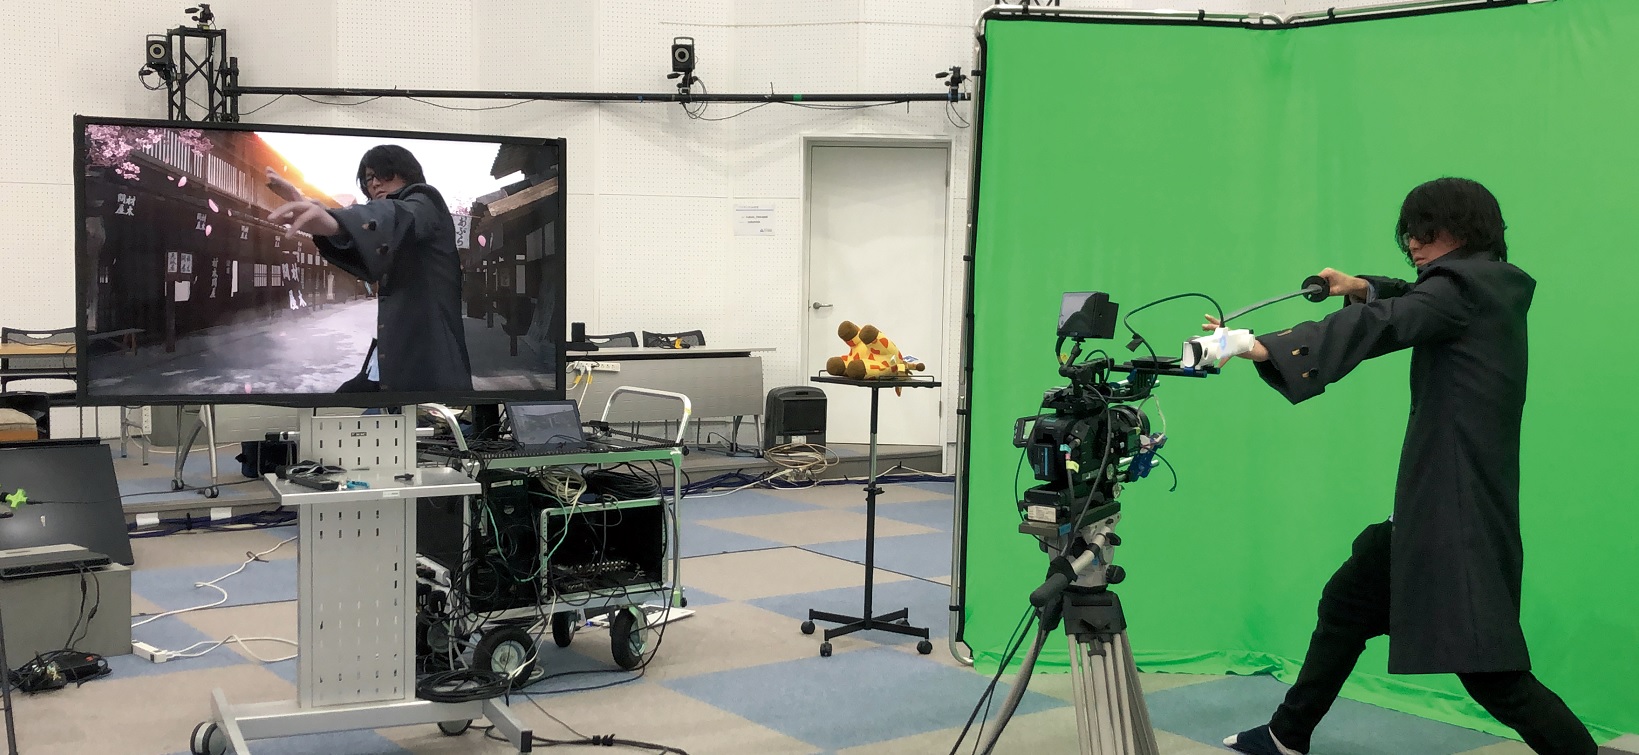 「LiveZ studio」は、実際のカメラの動きとバーチャル空間内に存在するカメラの動きを連動させる 俳優はモニター画面で合成された画像を見ながら動きをチェックできる